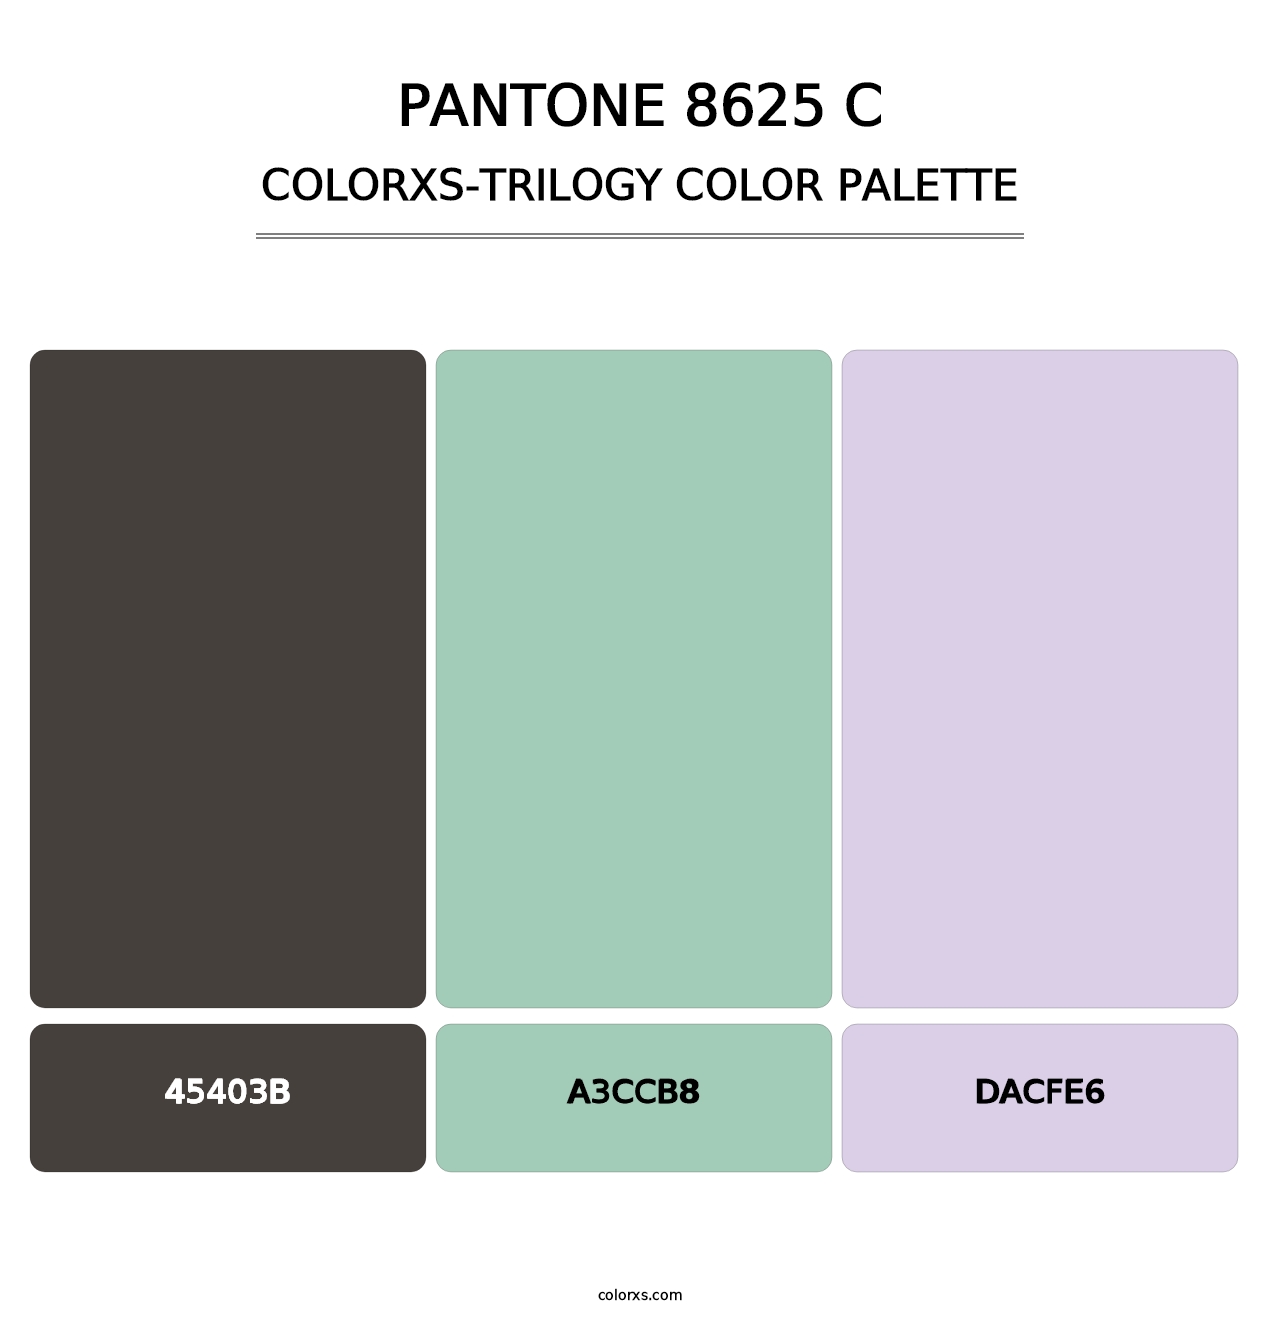 PANTONE 8625 C - Colorxs Trilogy Palette